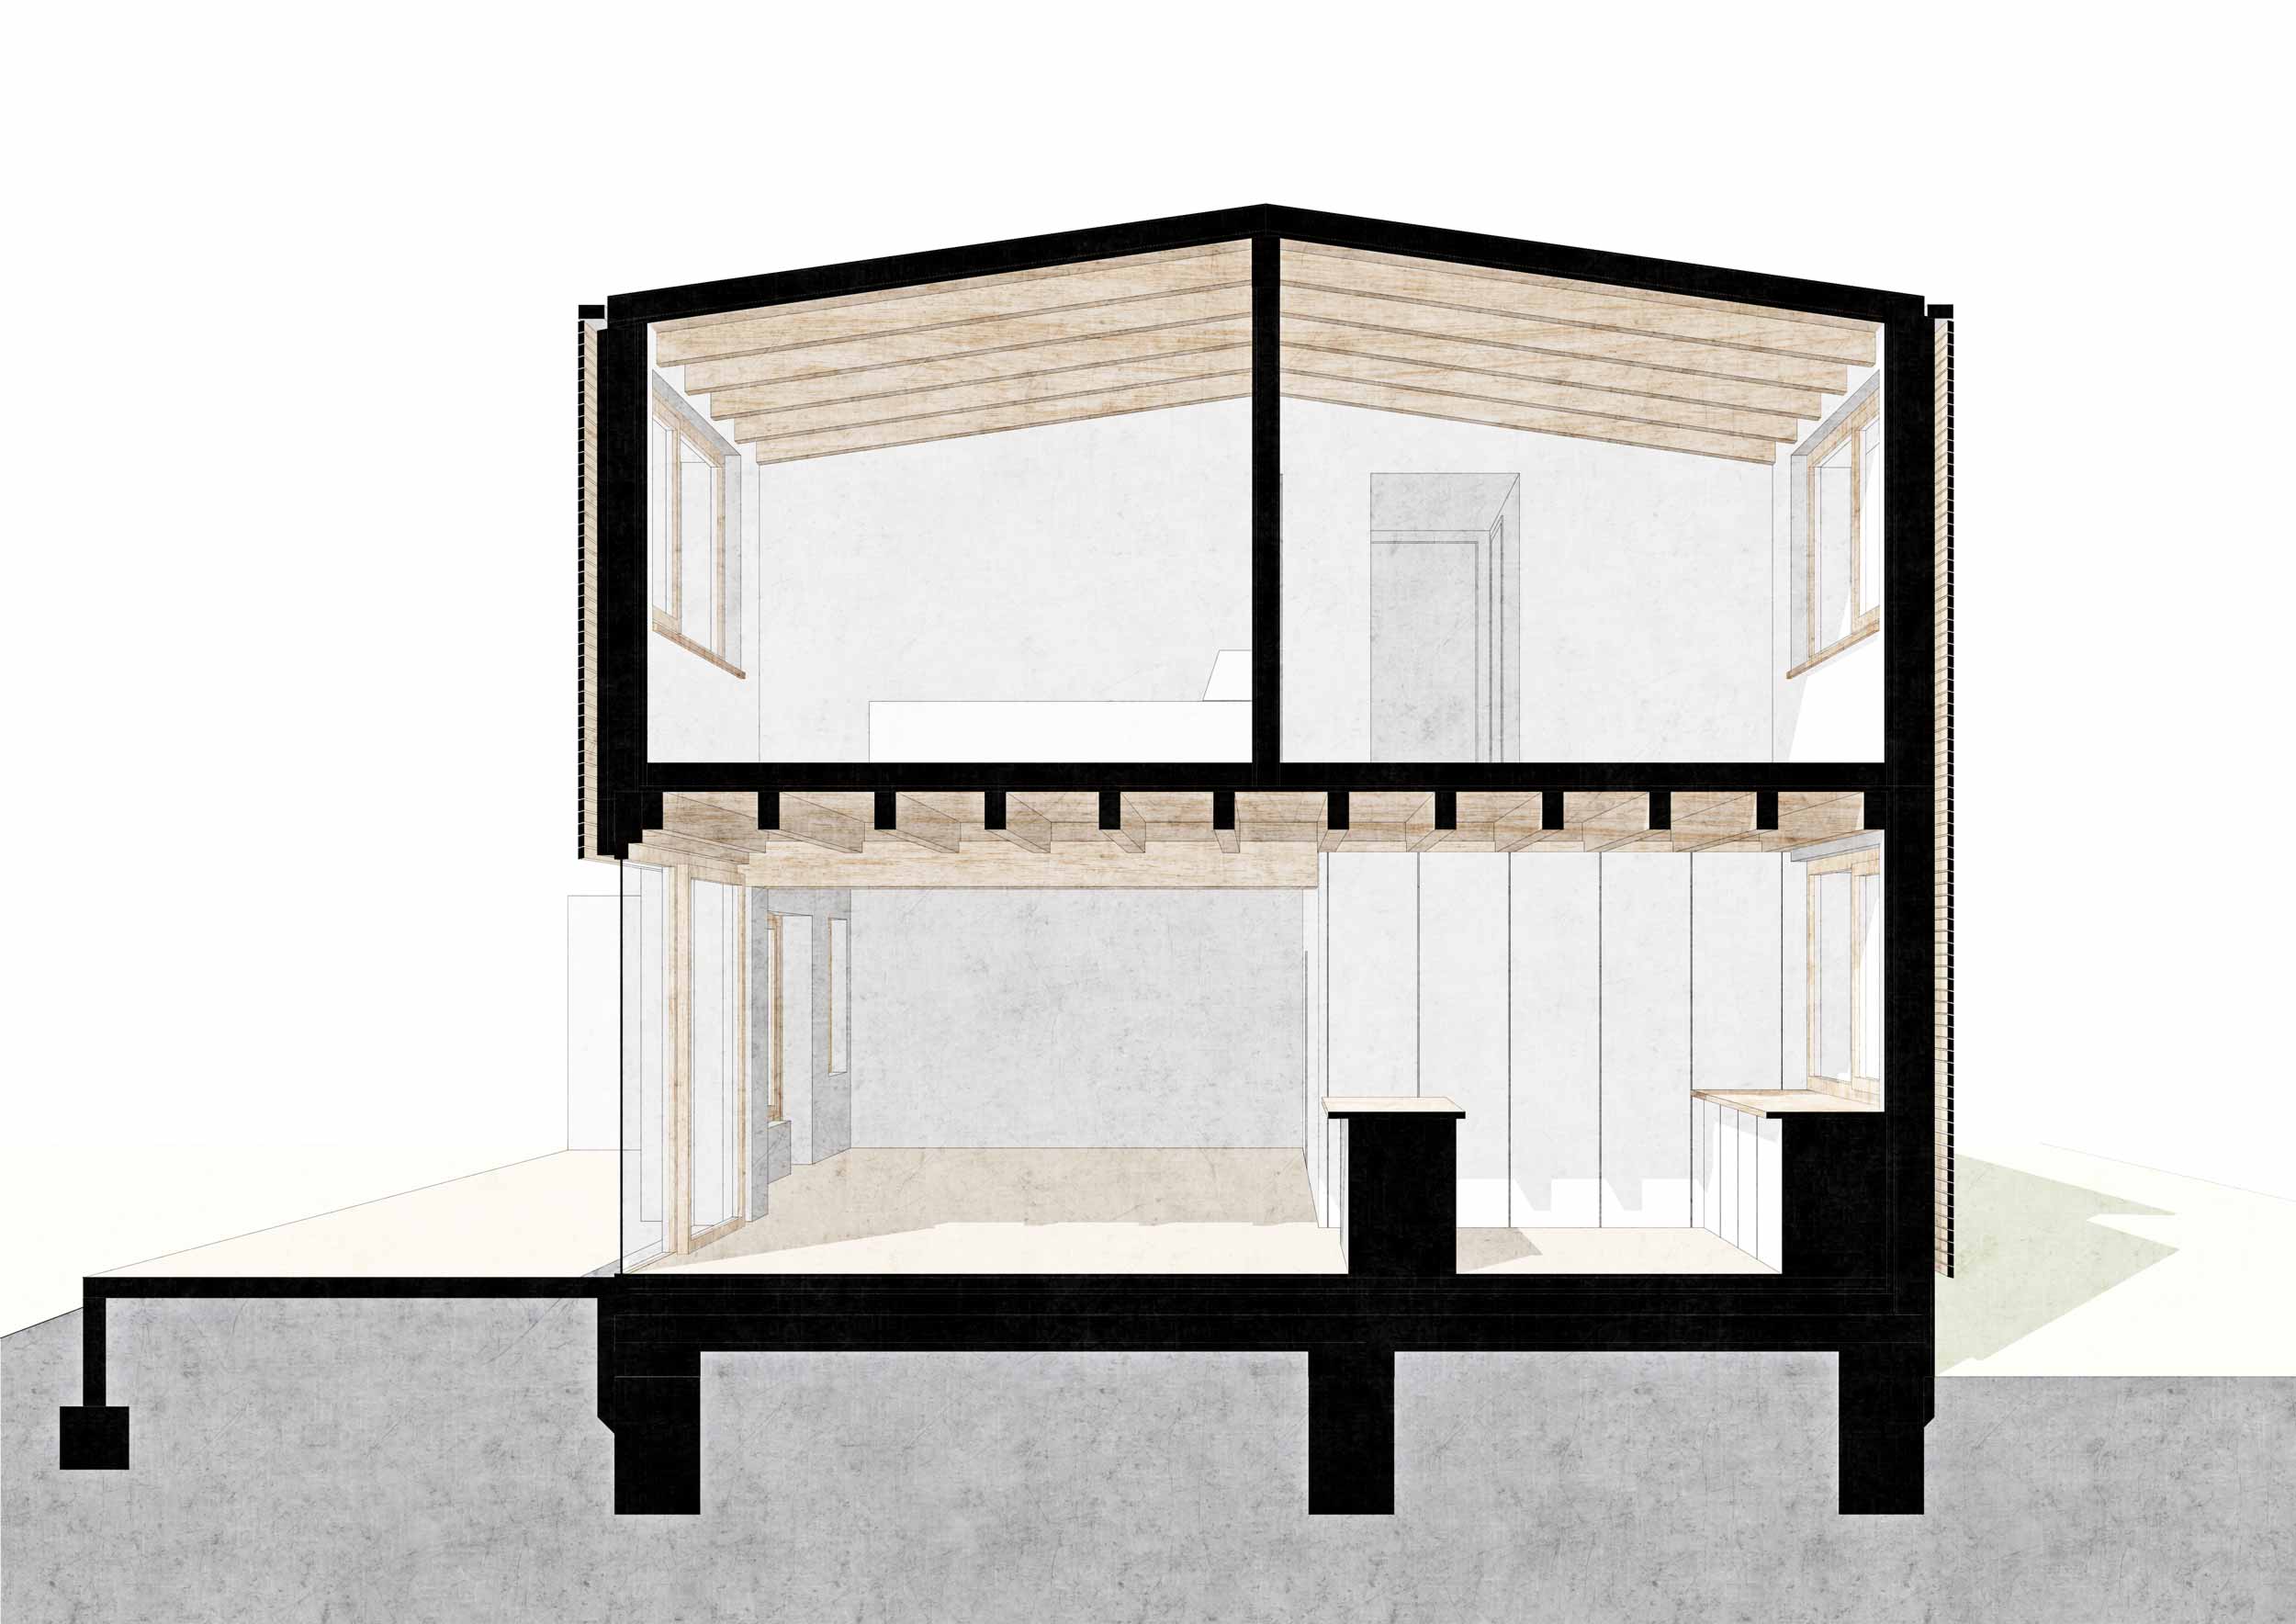 Schnitt - Anbau aus Holz | An- und Umbau einer Doppelhaushälfte für eine Familie | Konstruktiver Holzbau mit Fassade aus Lärchenholz in Berlin